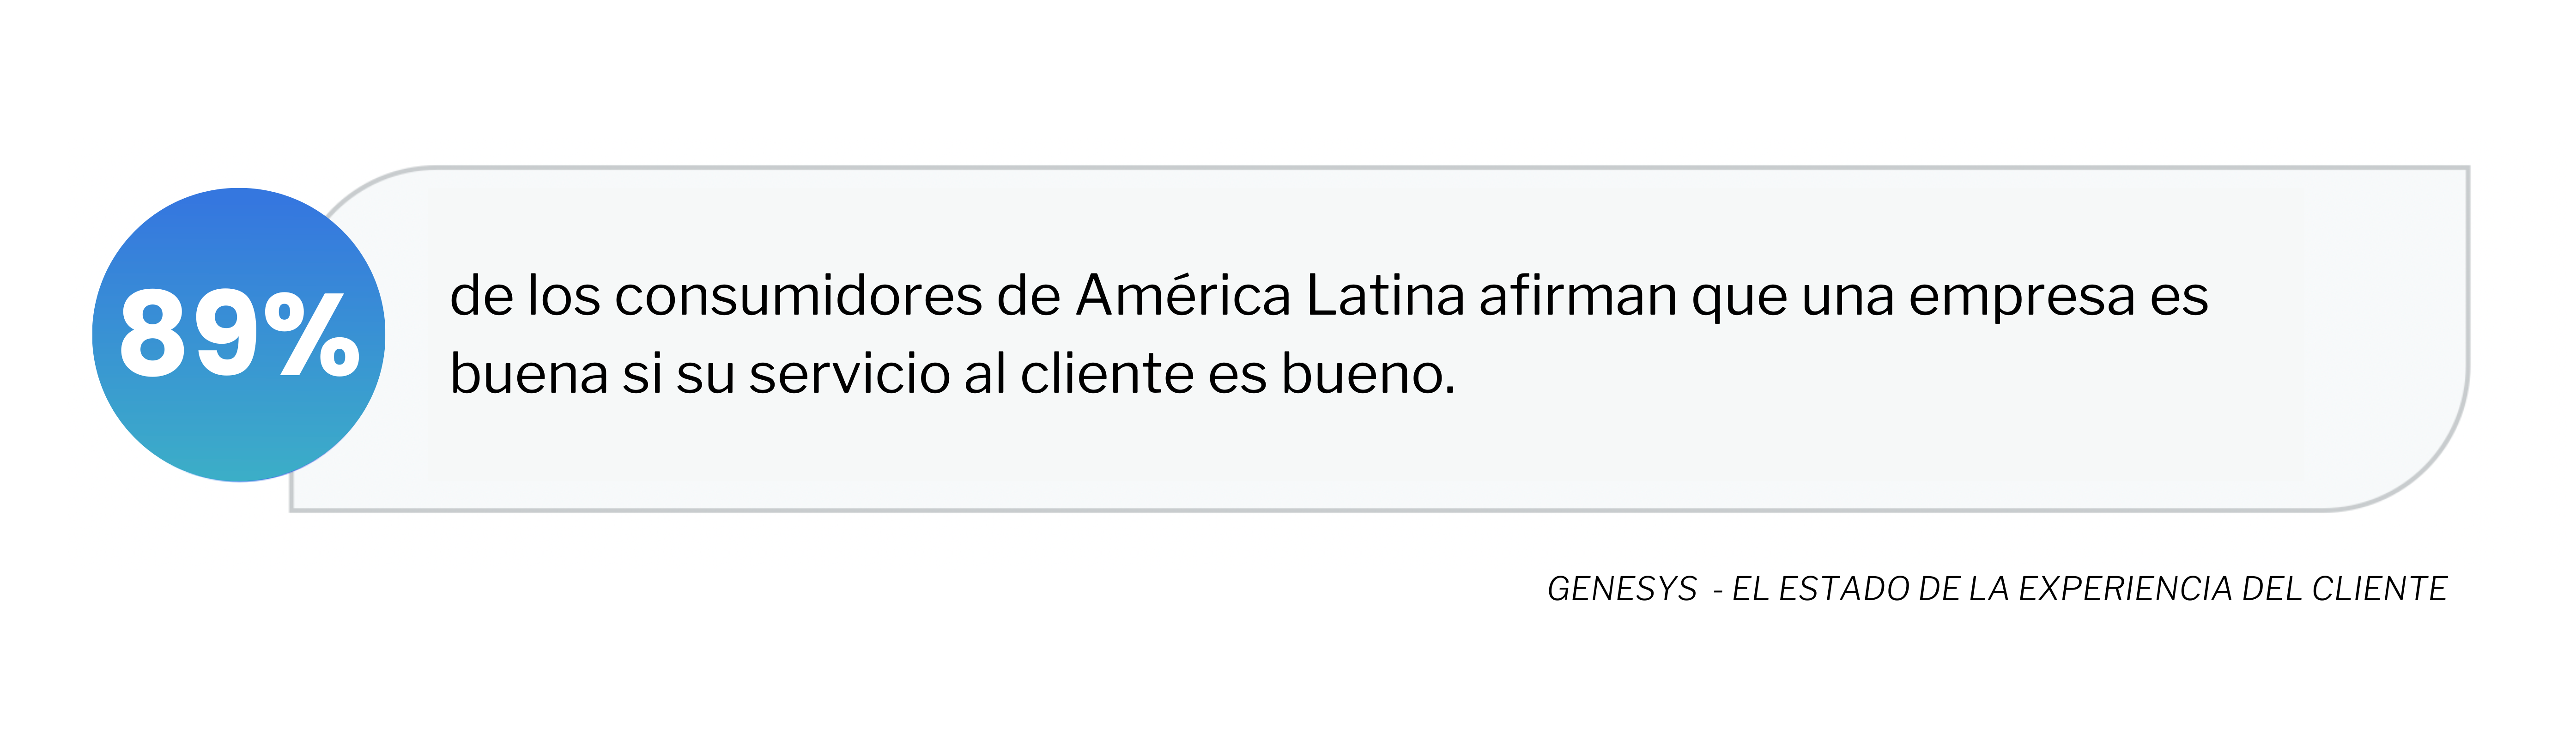 Consumidores en América Latina que afirmar que una empresa es buena si su servicio al cliente lo es.